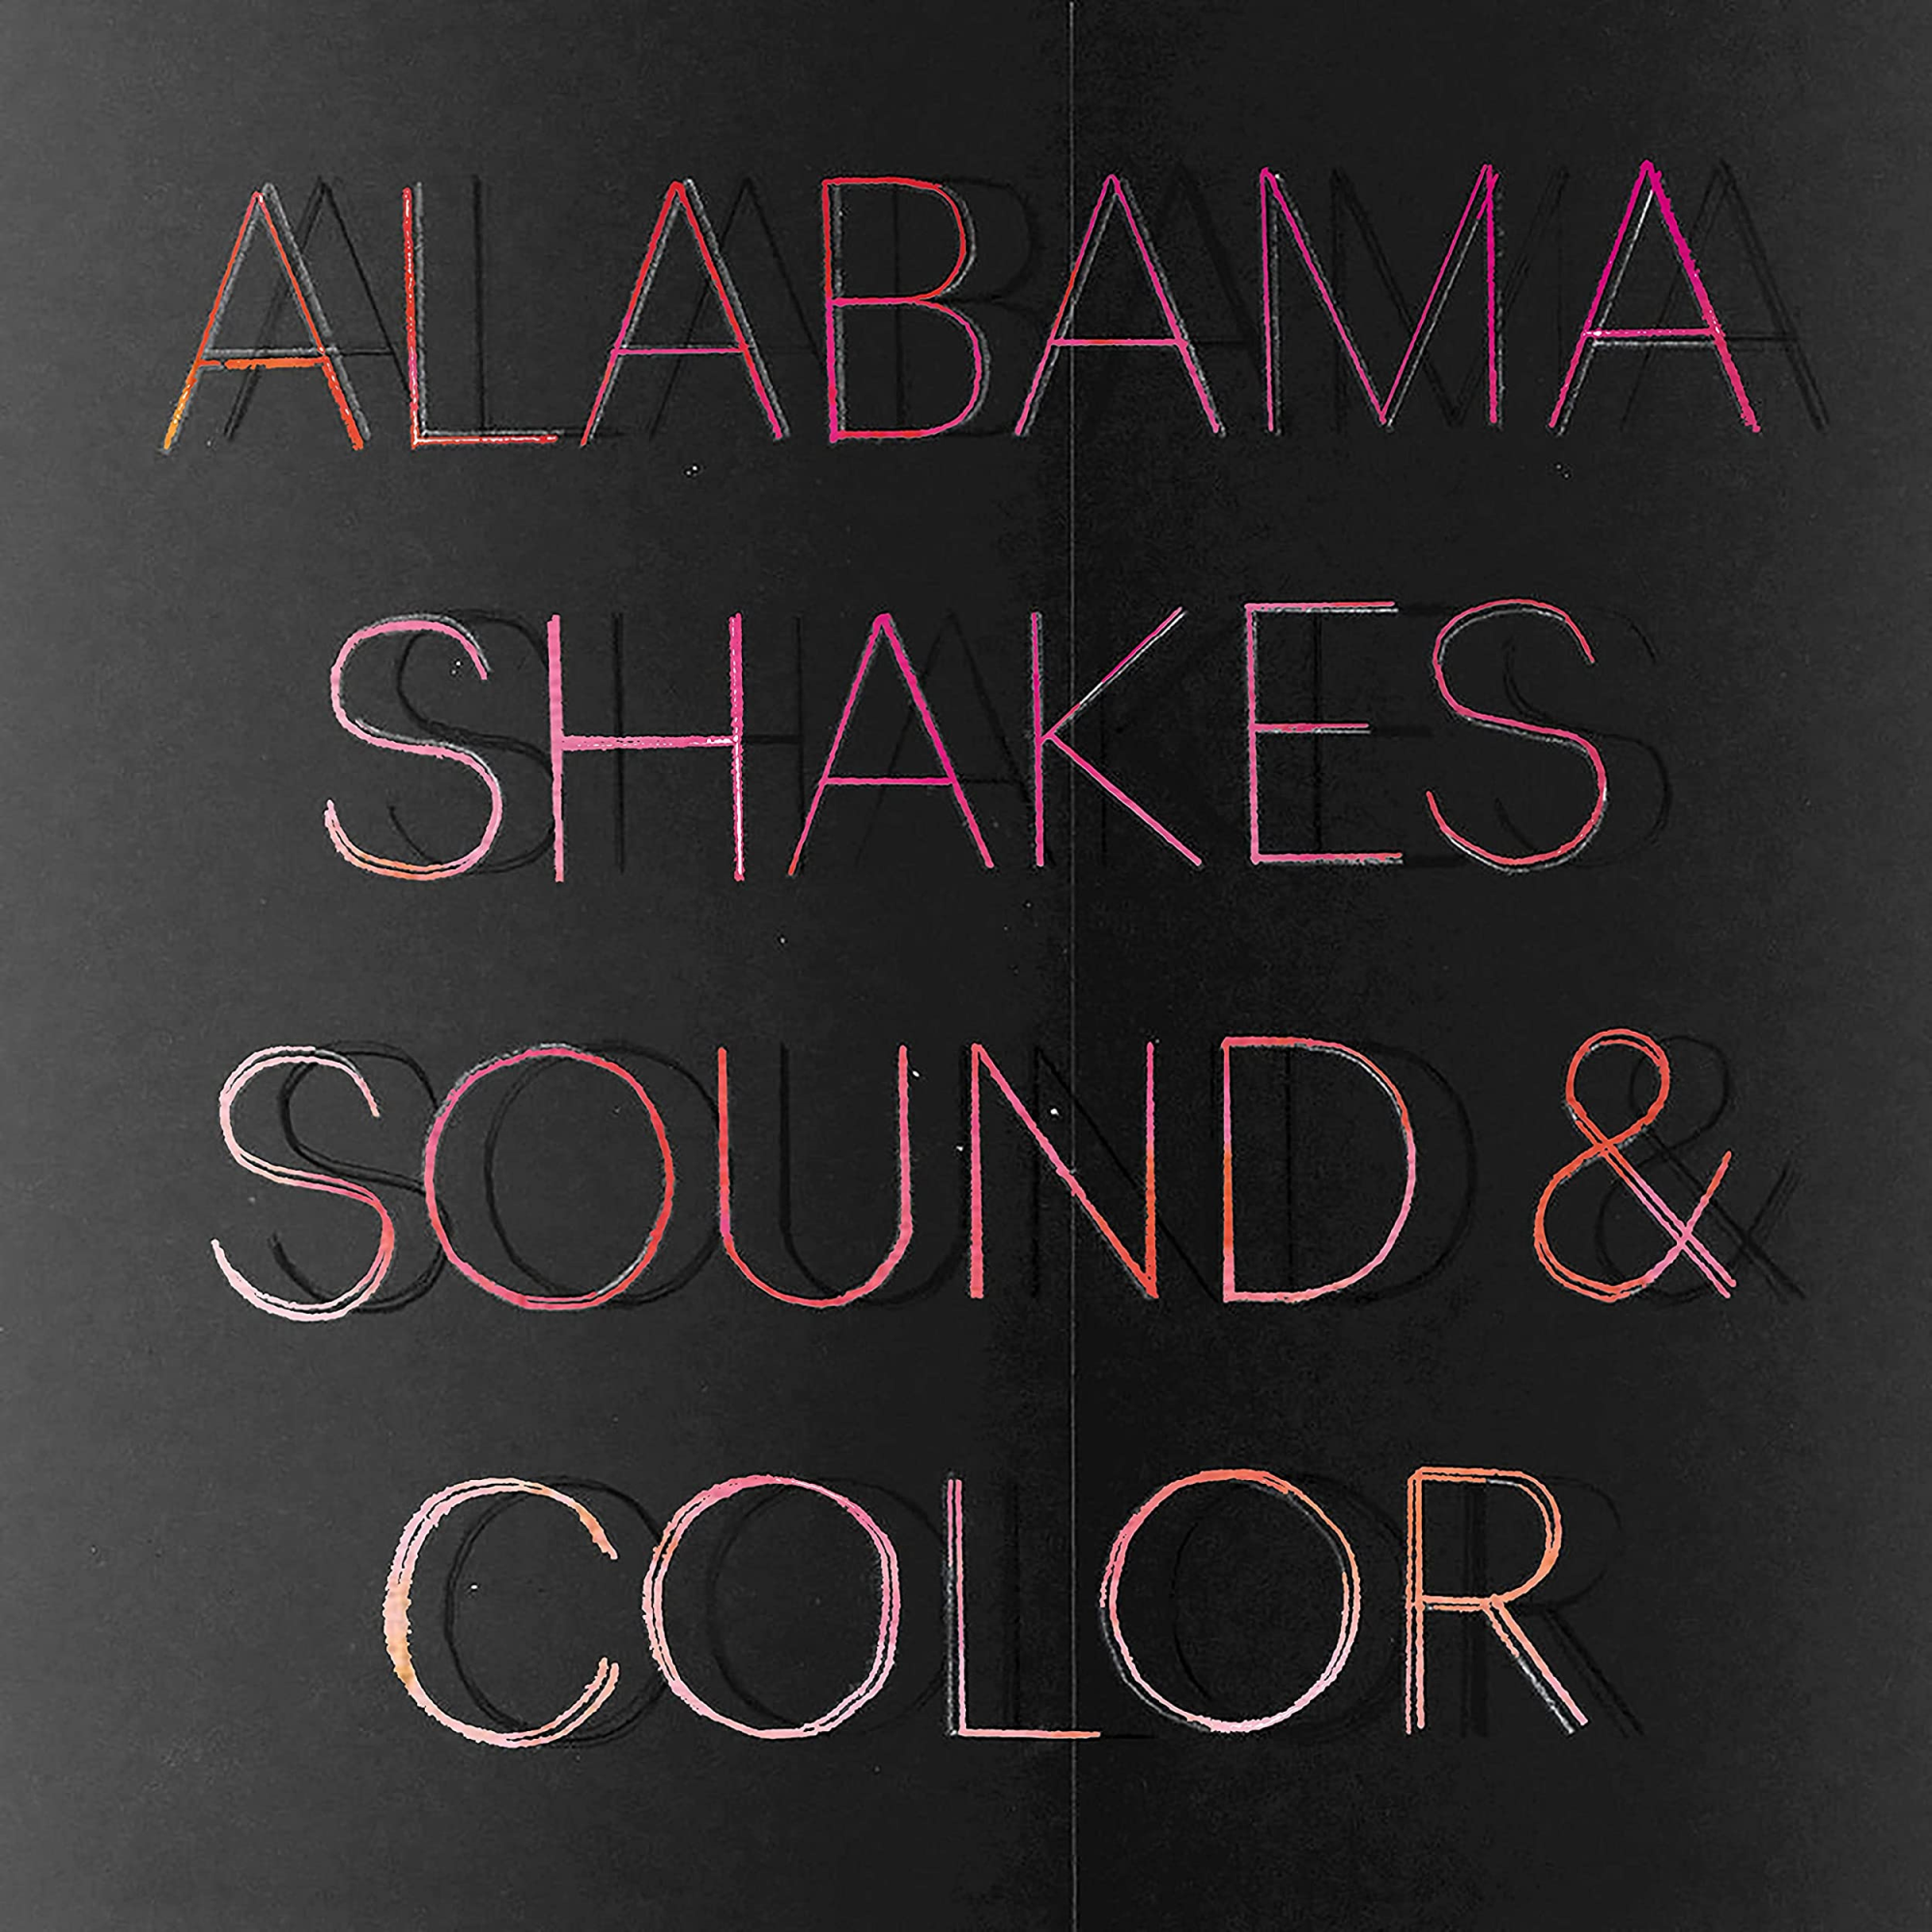 Vinile Alabama Shakes - Sound & Color 2 Lp NUOVO SIGILLATO EDIZIONE DEL SUBITO DISPONIBILE